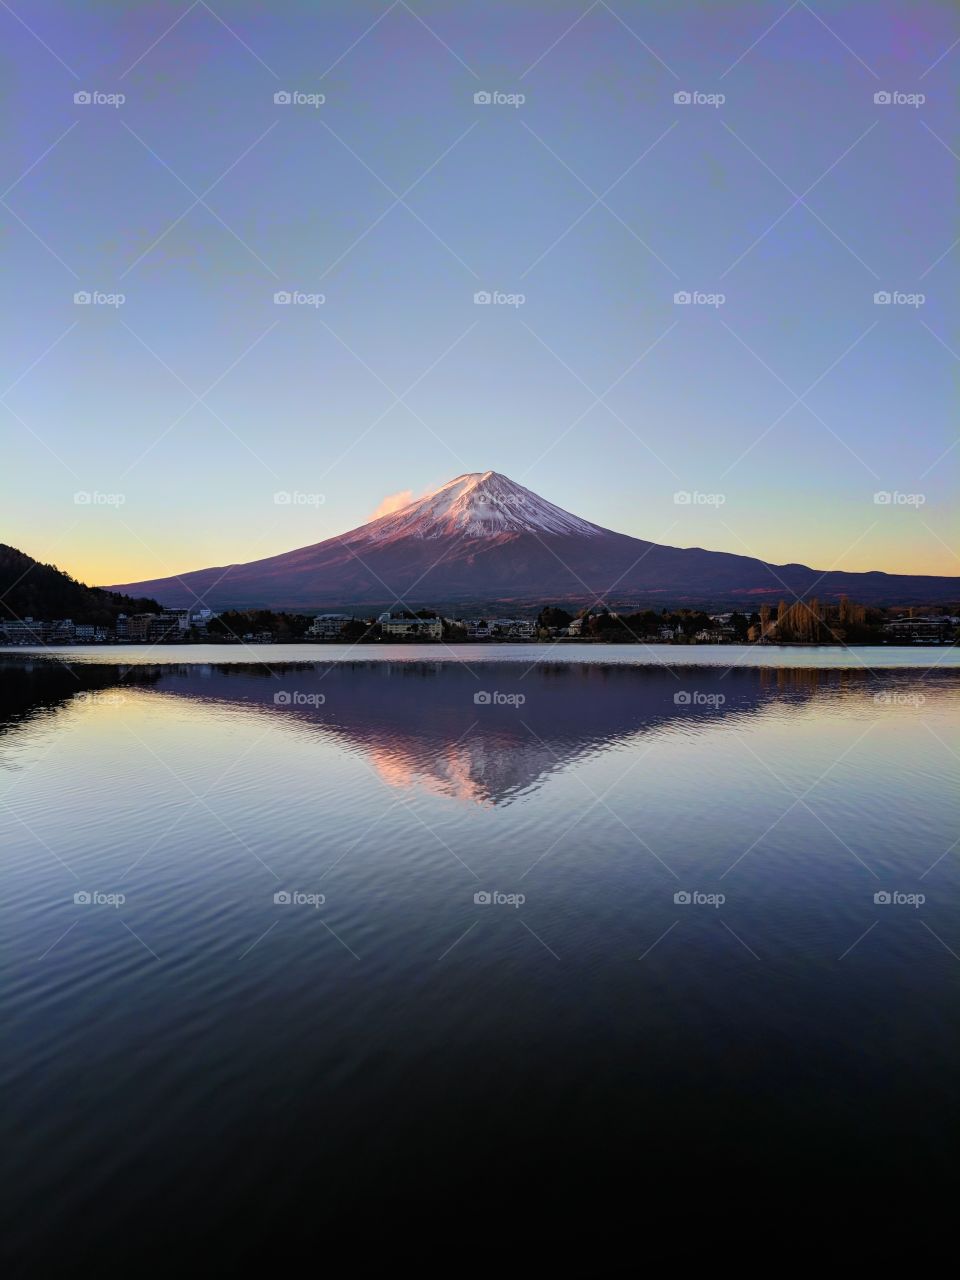 Fuji reflected in Lake Kawaguchi at dawn